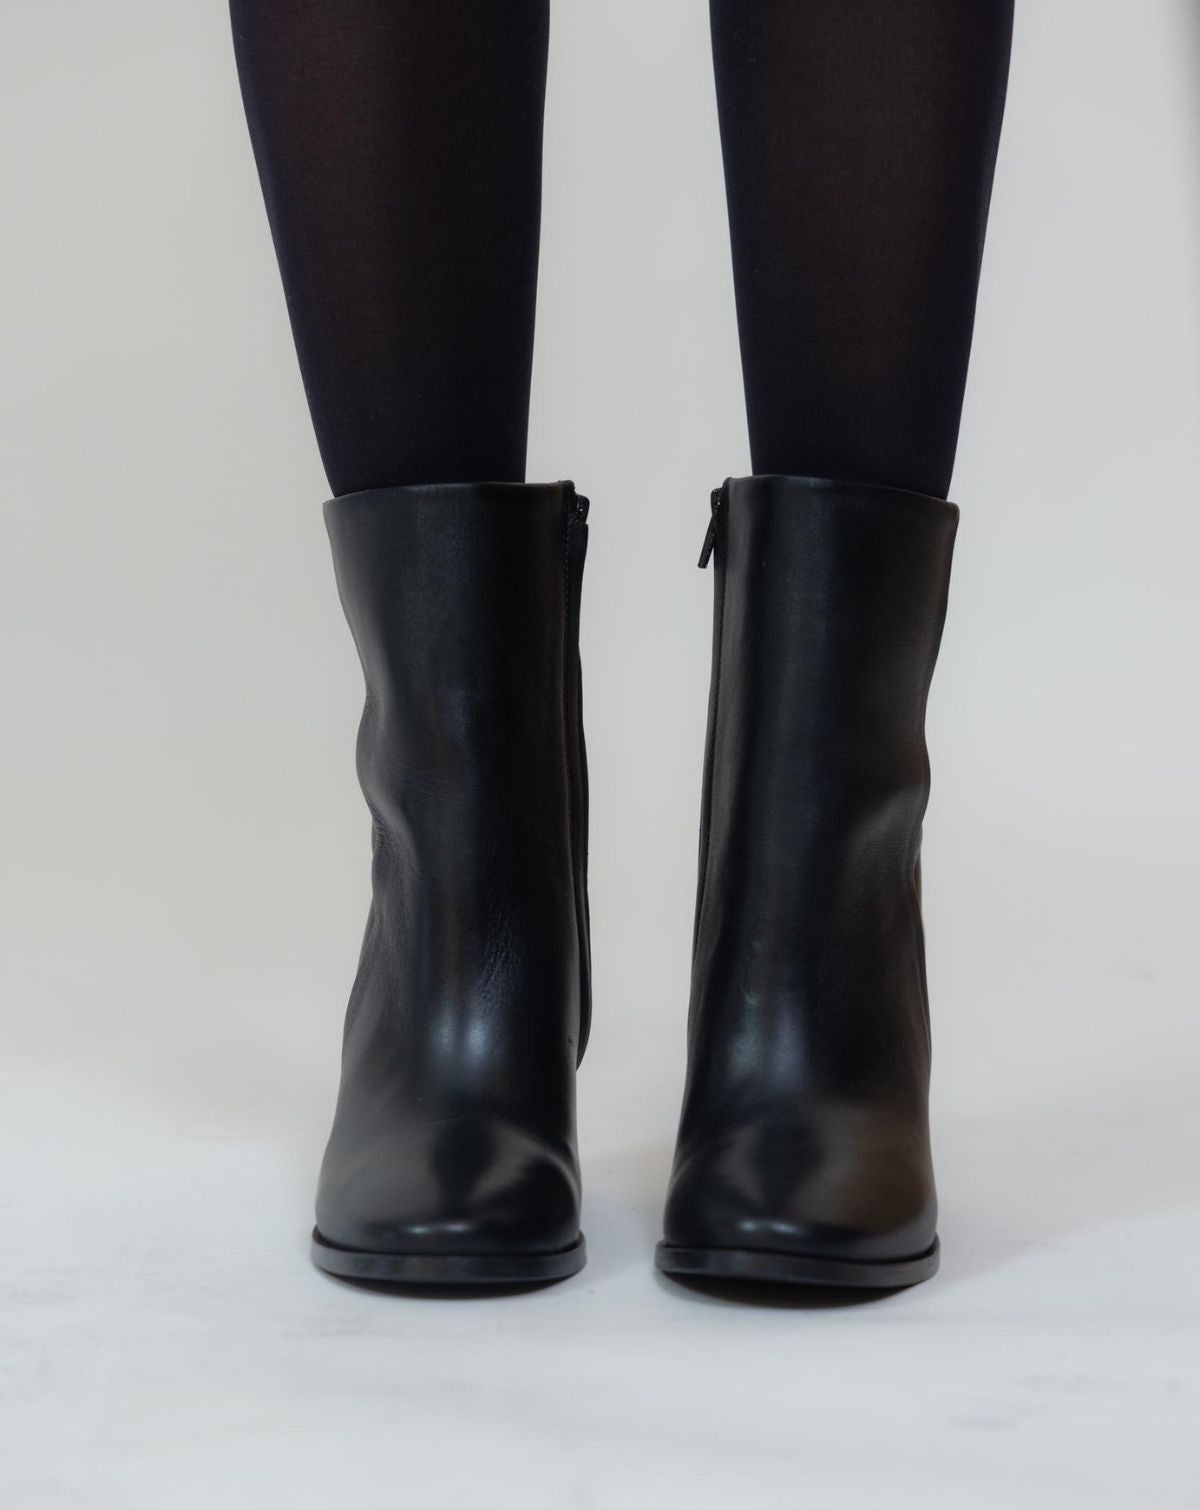 Maison Sarah Lavoine Boots Preston Black - 100% Sisters Concept Store